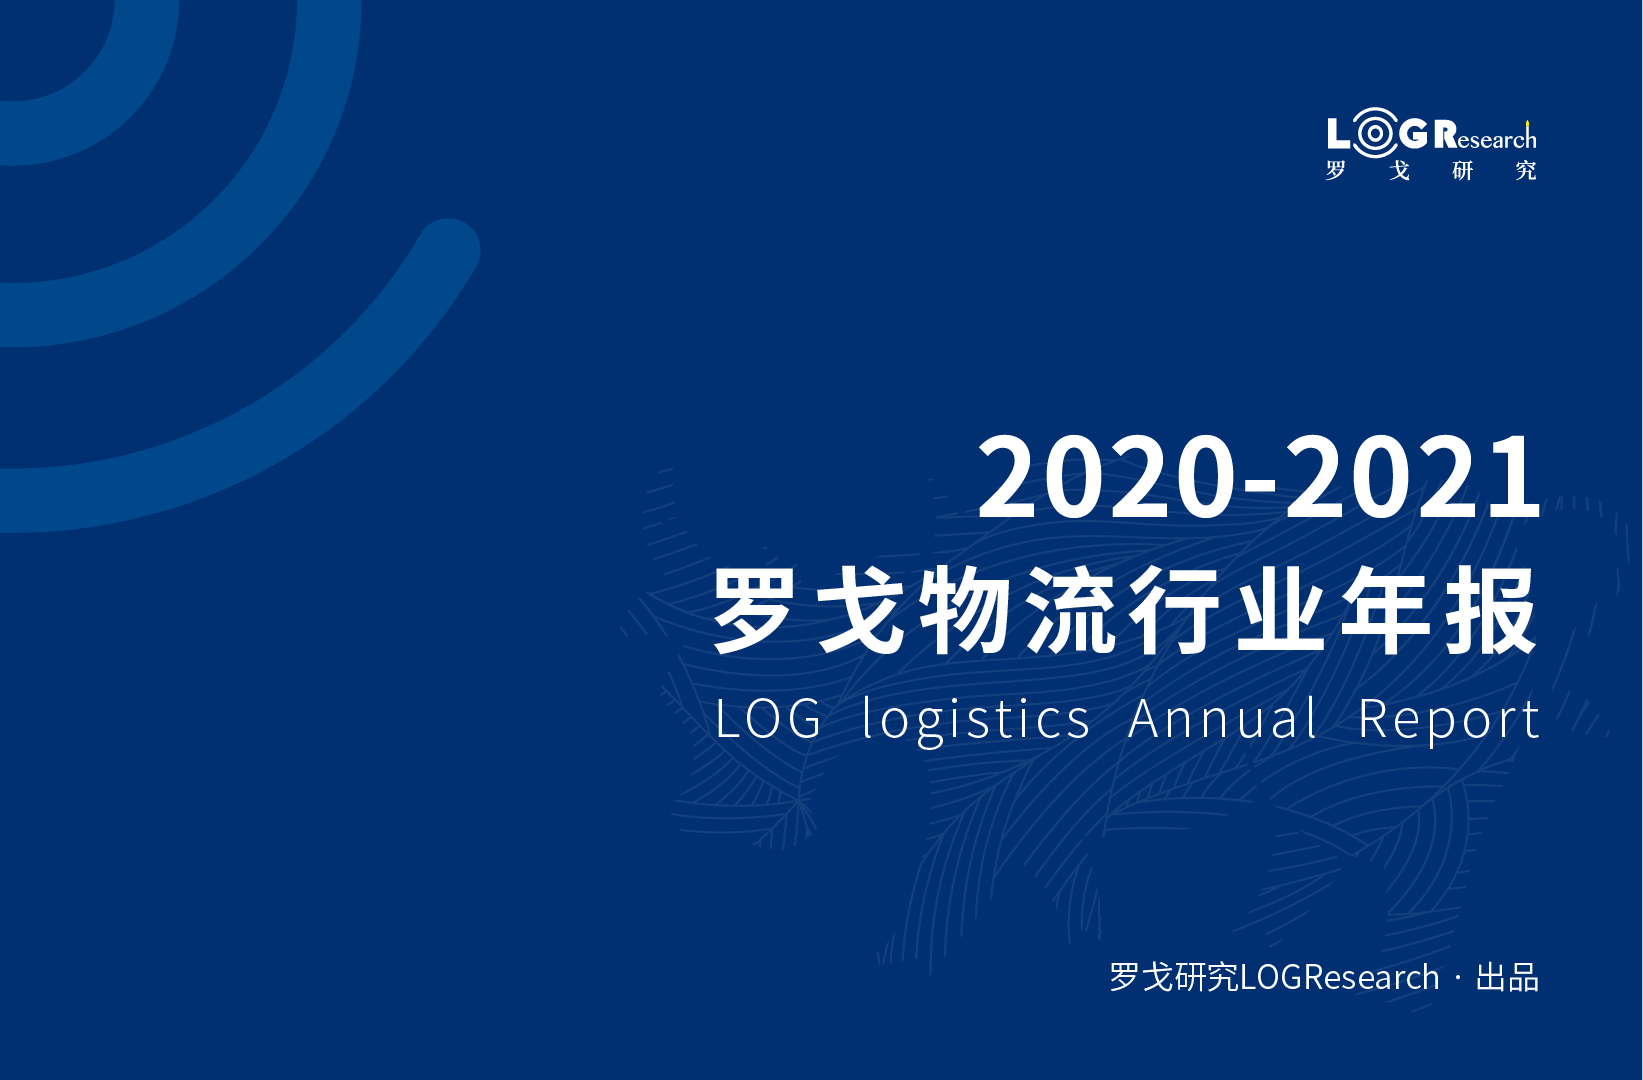 罗戈研究 | 2020-2021罗戈物流行业年报